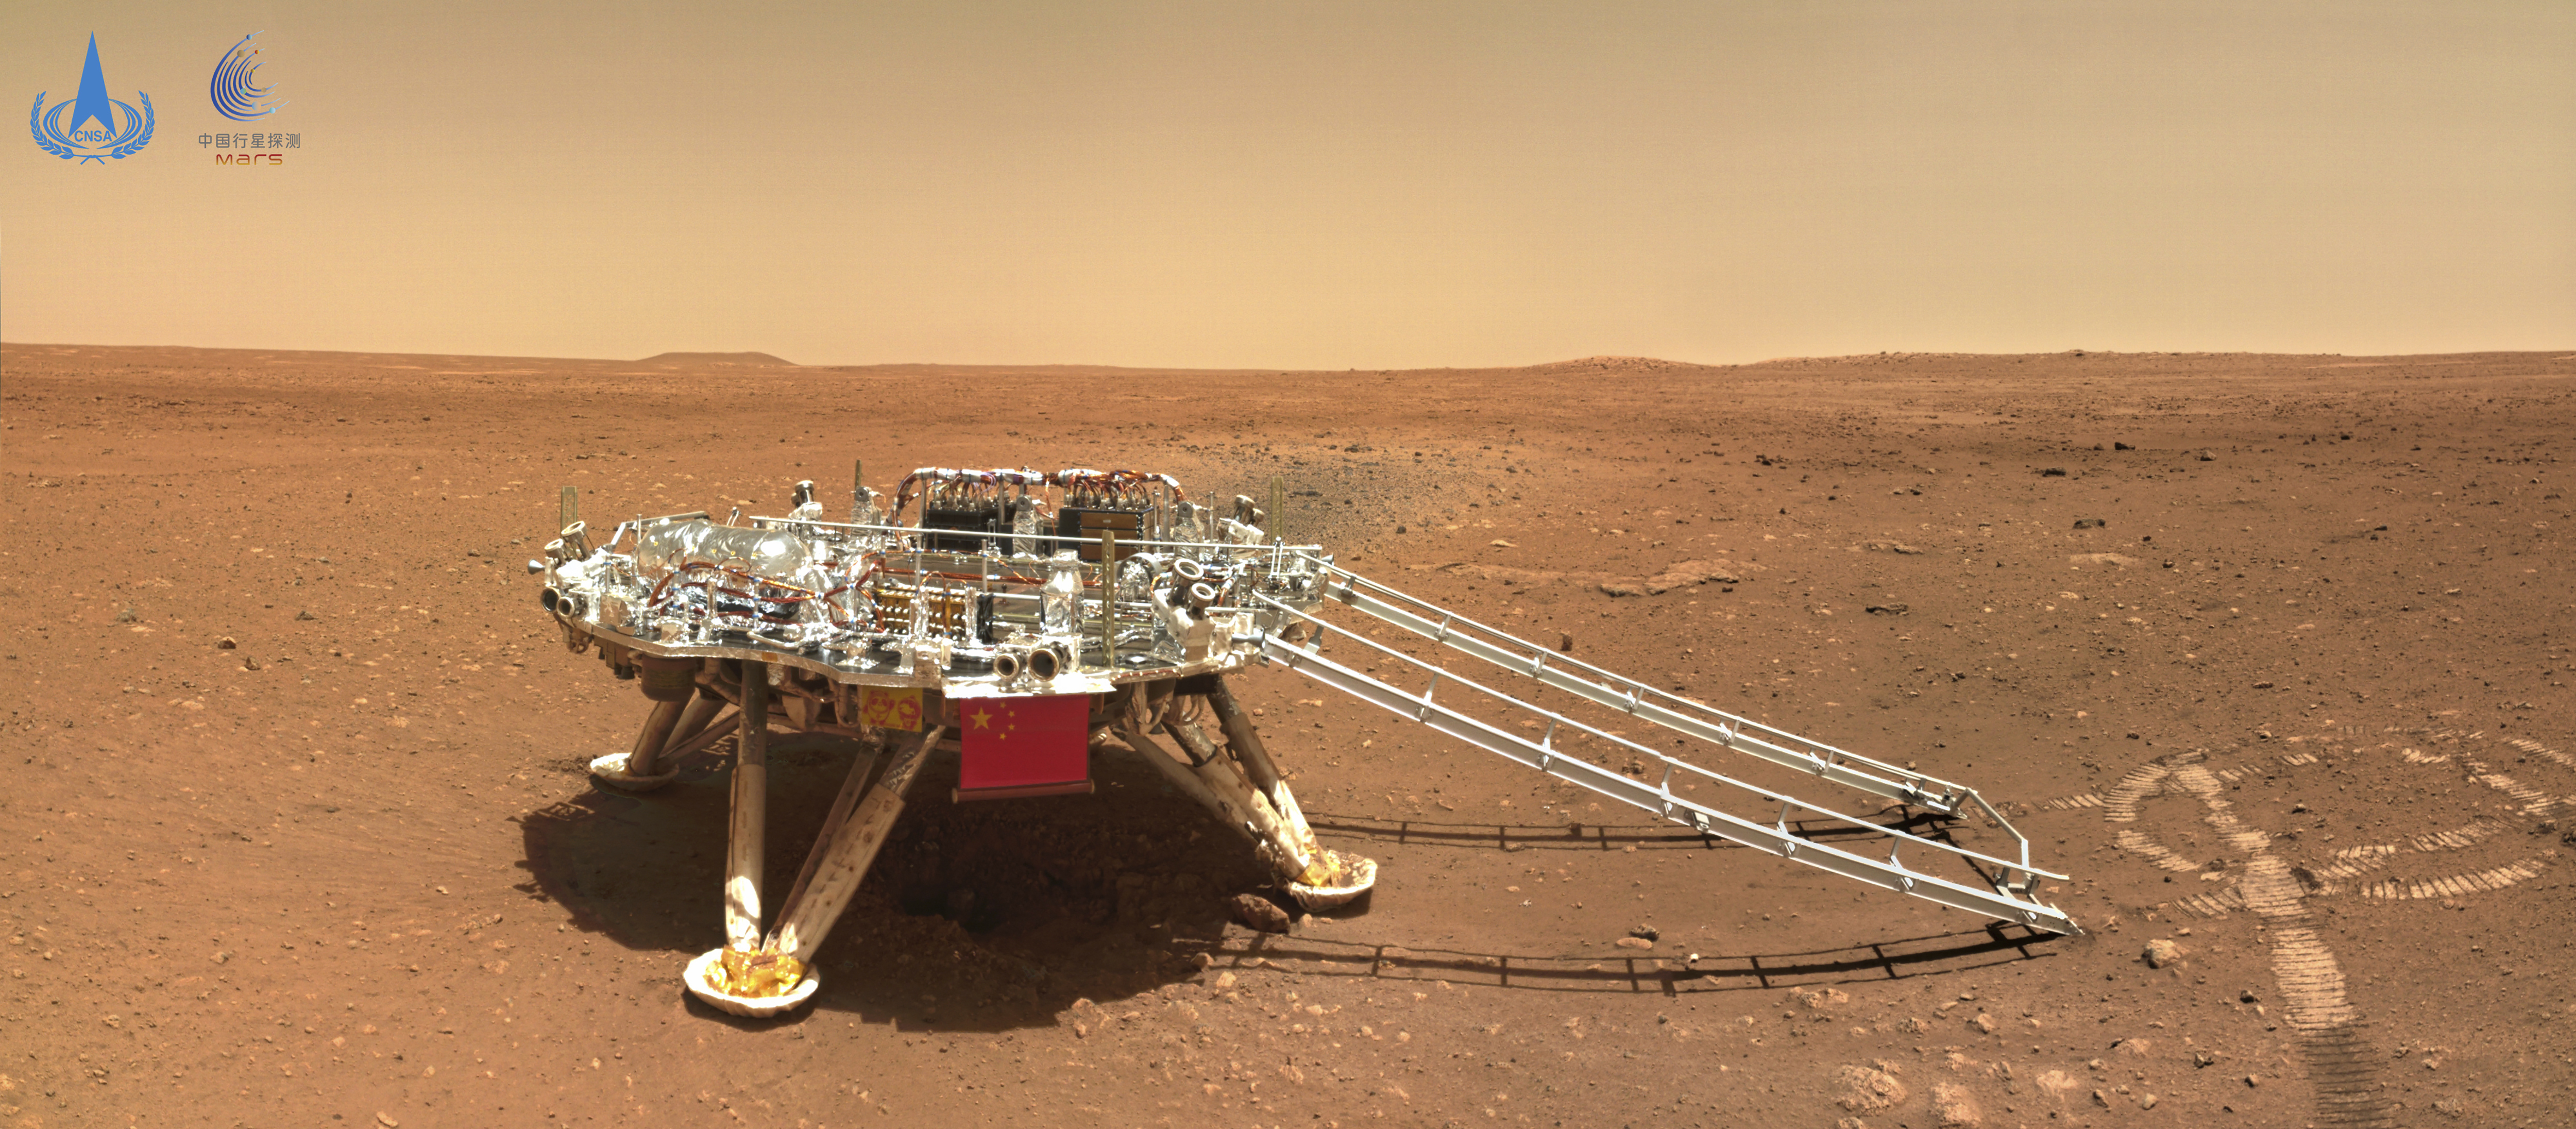 The Martian rover